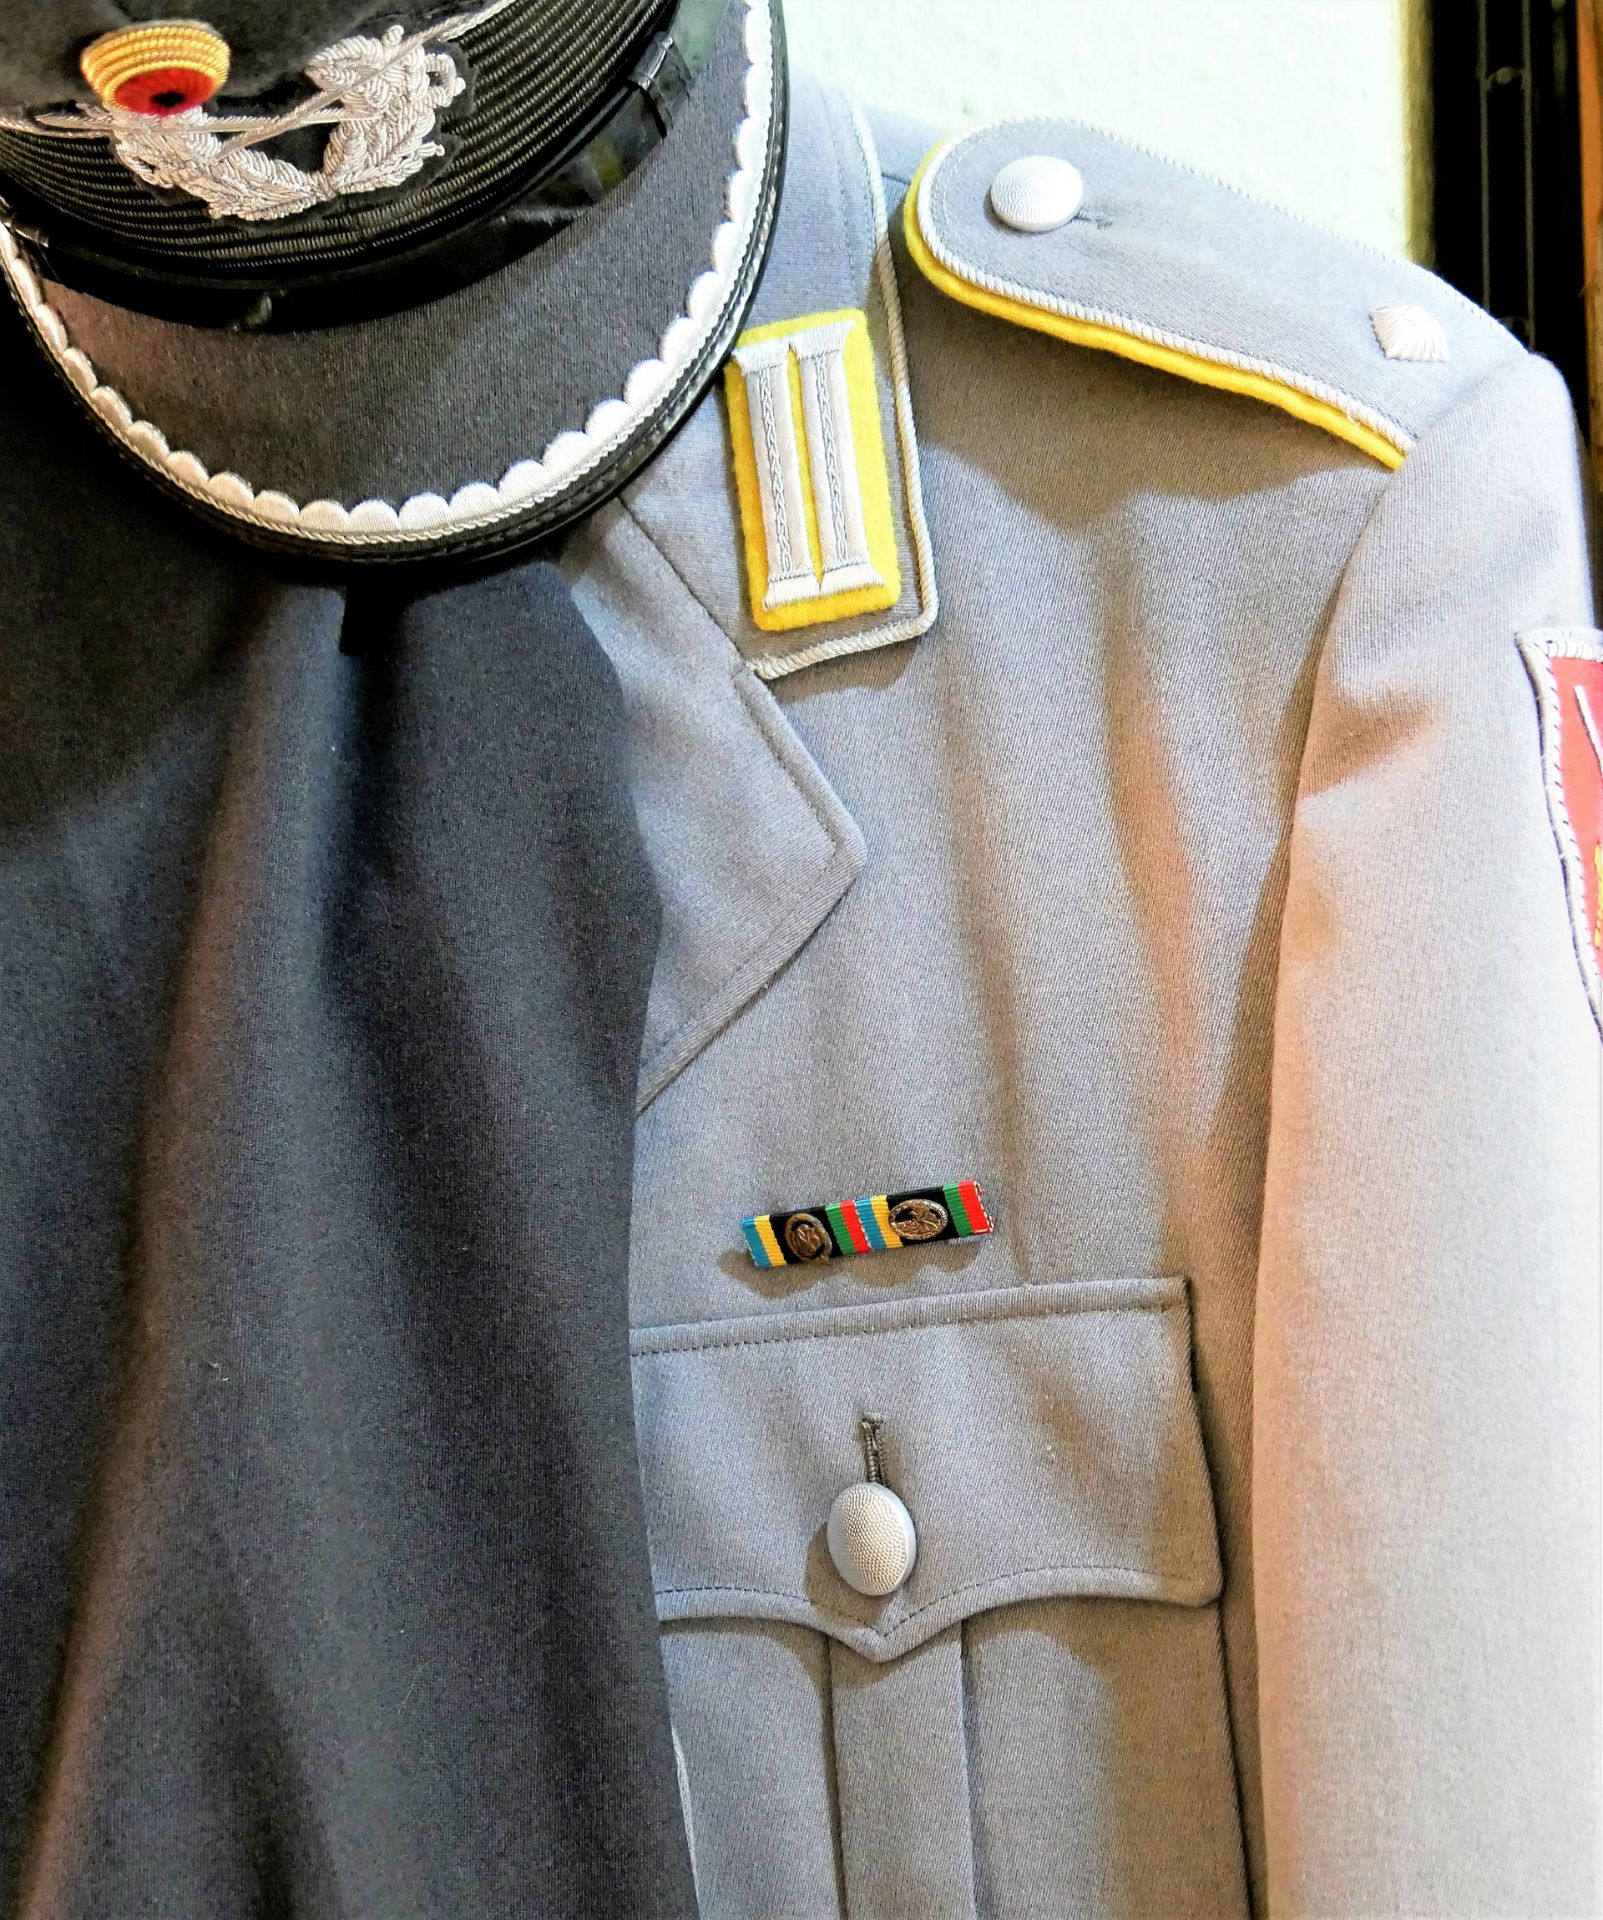 Bundeswehr Offiziersuniform mit Effekten, bestehend aus 1 Jacke, 1 Hose und 1 Mütze.>/de> - Image 3 of 3